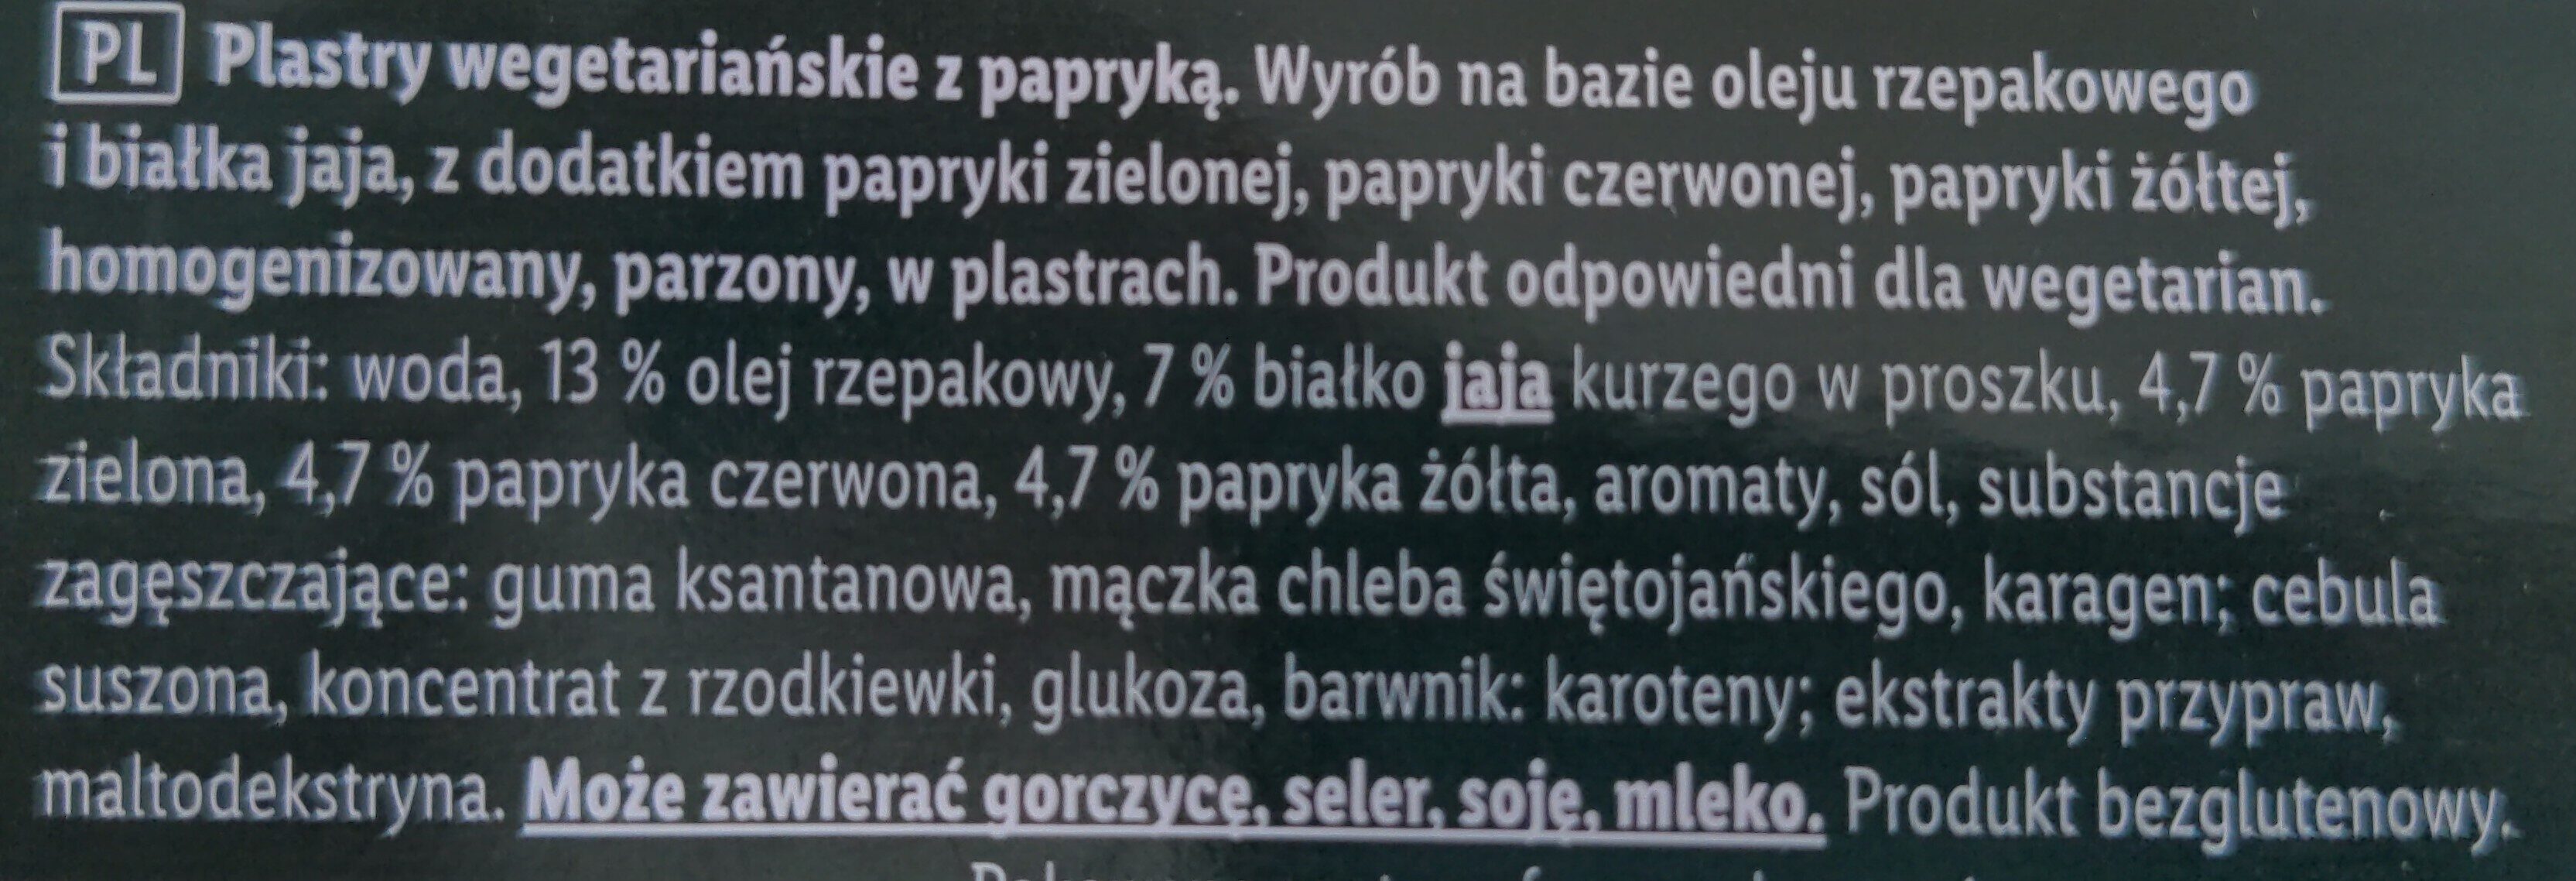 Wegetariańskie plastry z papryką - Ingrédients - pl